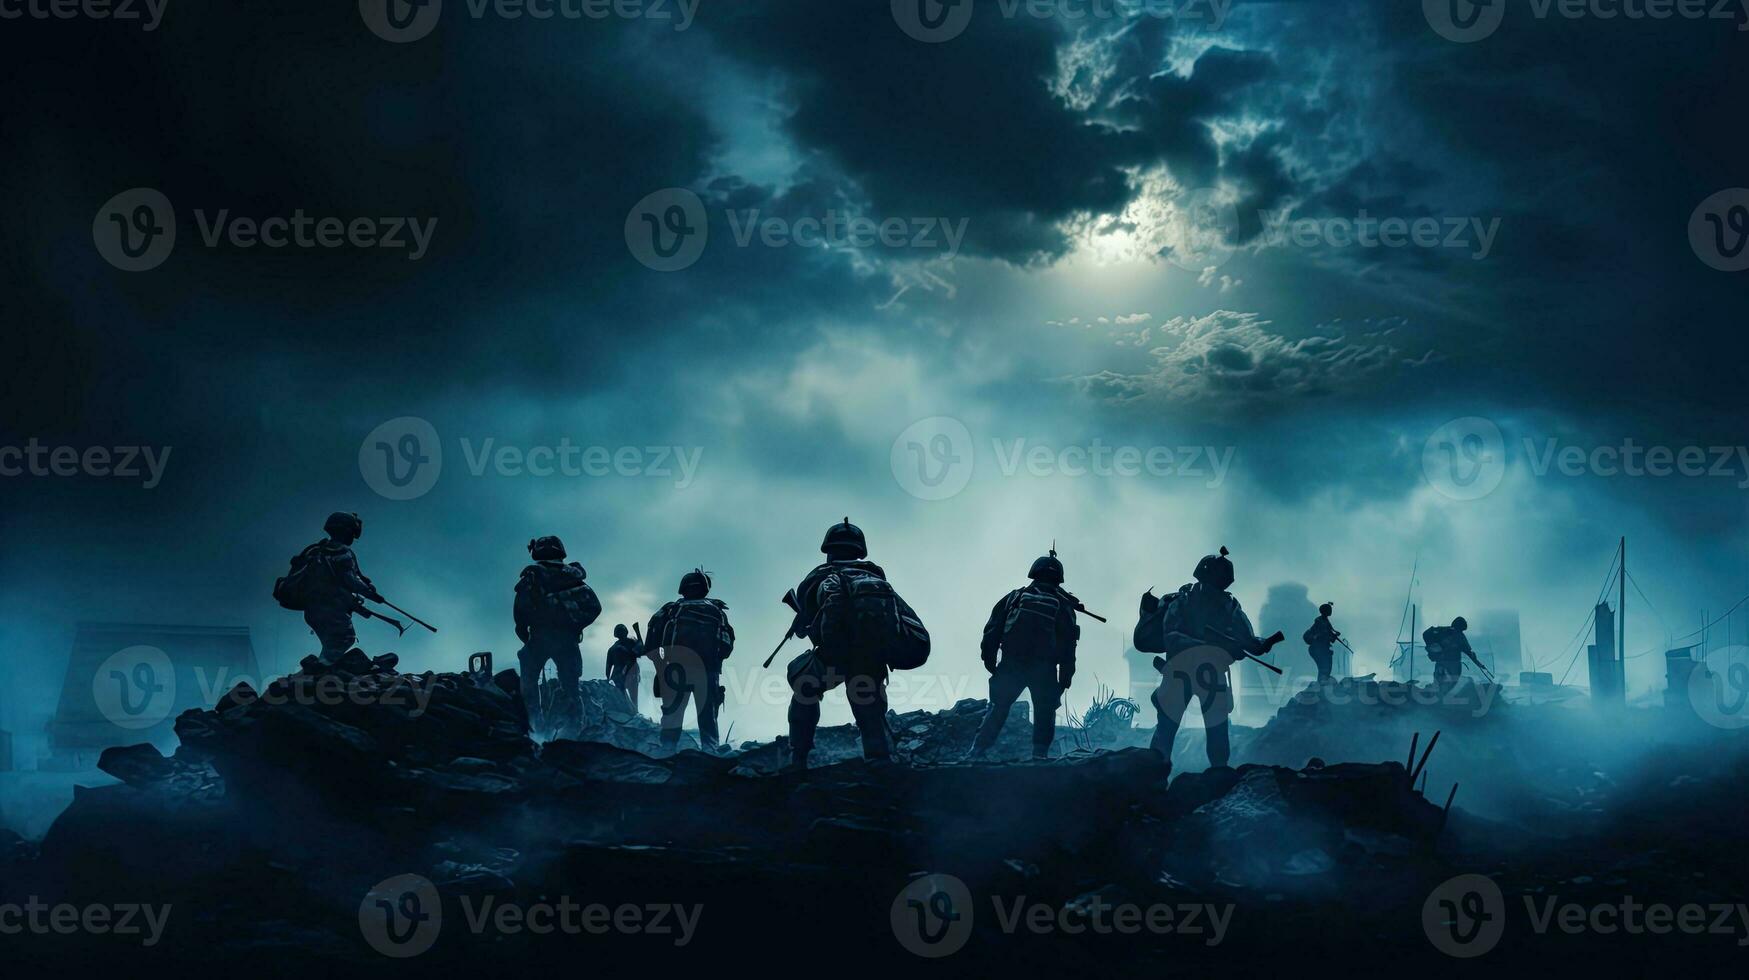 oorlog tafereel met silhouet soldaten vechten in een geruïneerd stad onder een bewolkt lucht foto